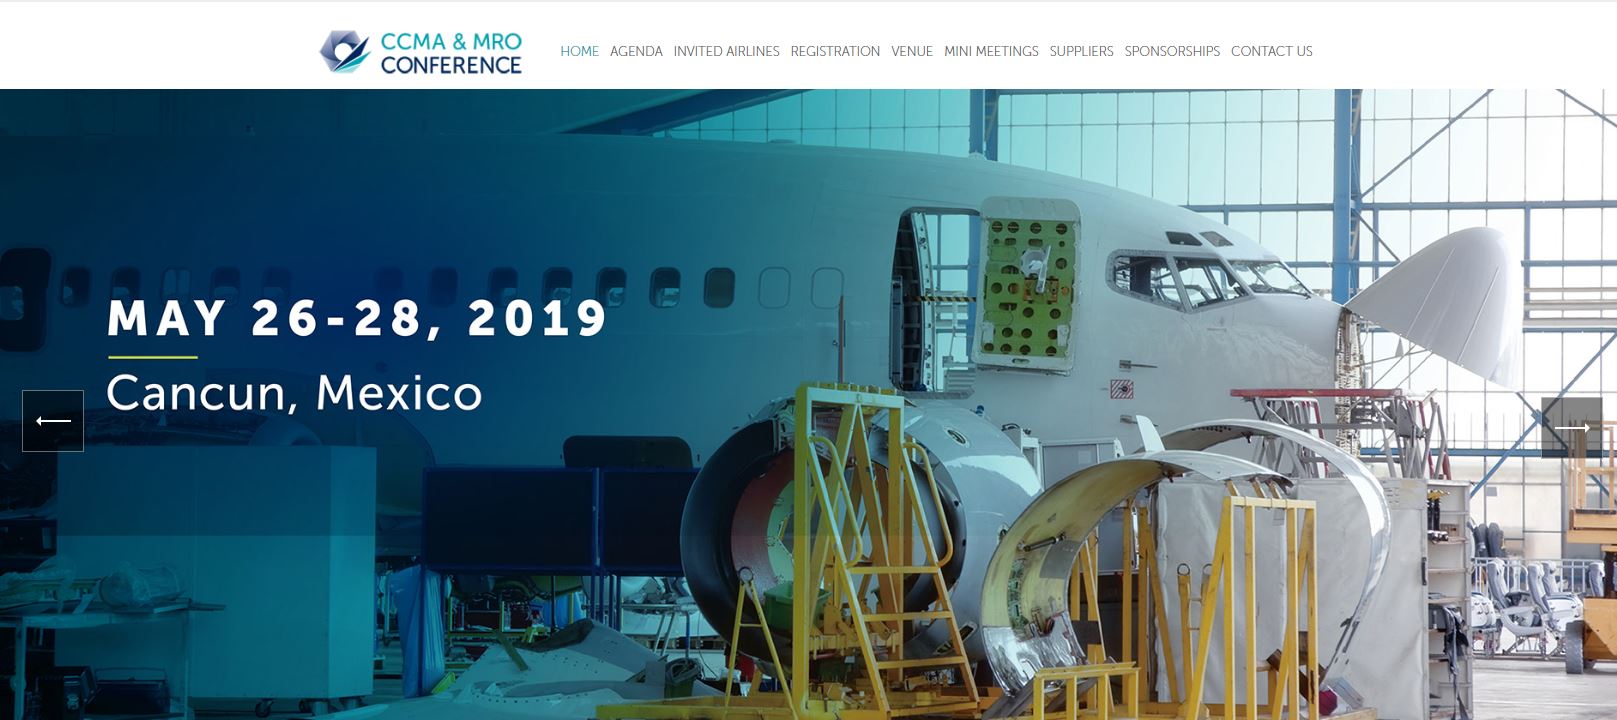 Comienza la principal conferencia de mantenimiento y compras técnicas de la aviación en América Latina y el Caribe